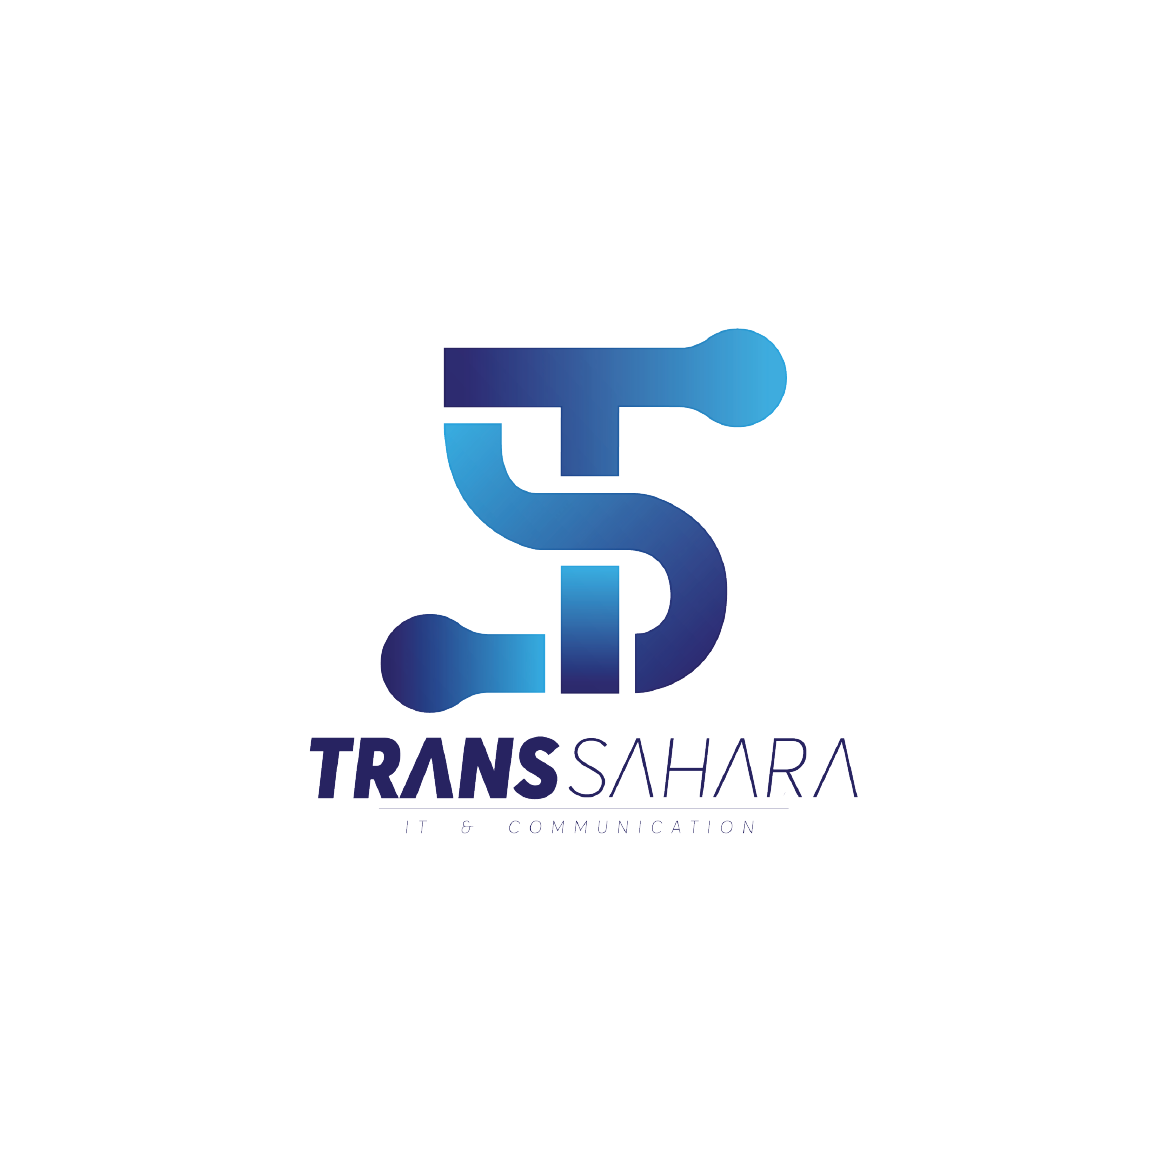 trans sahara